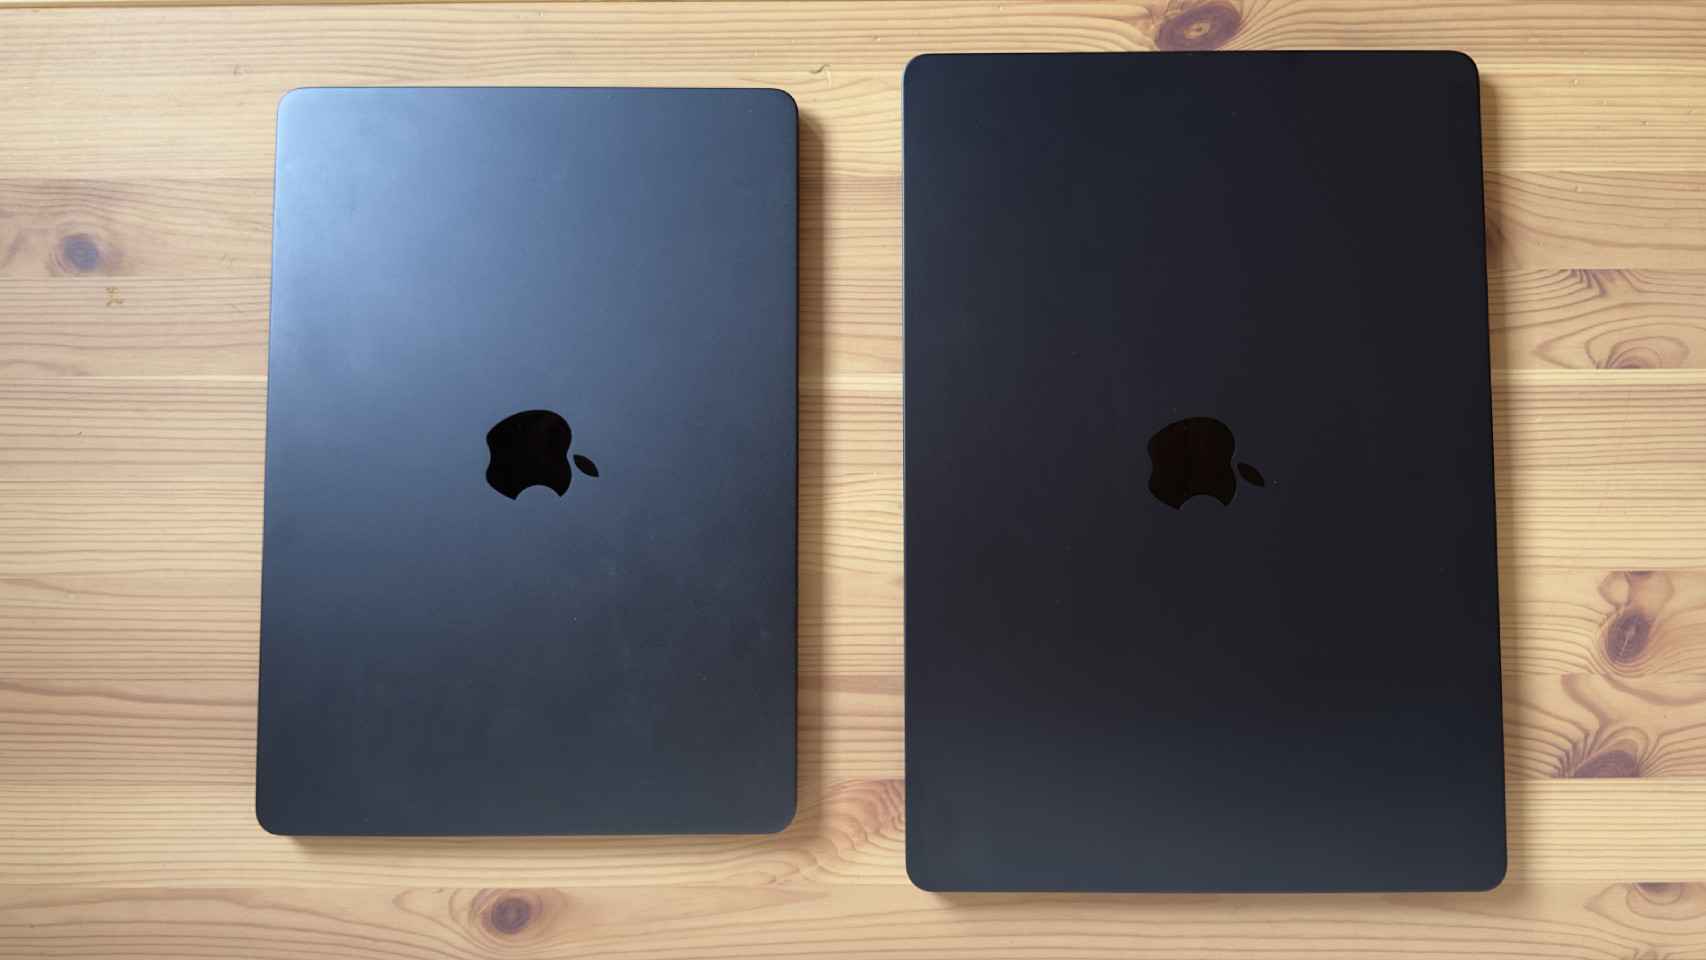 MacBook Air 13 pulgadas frente al nuevo de 15 pulgadas.